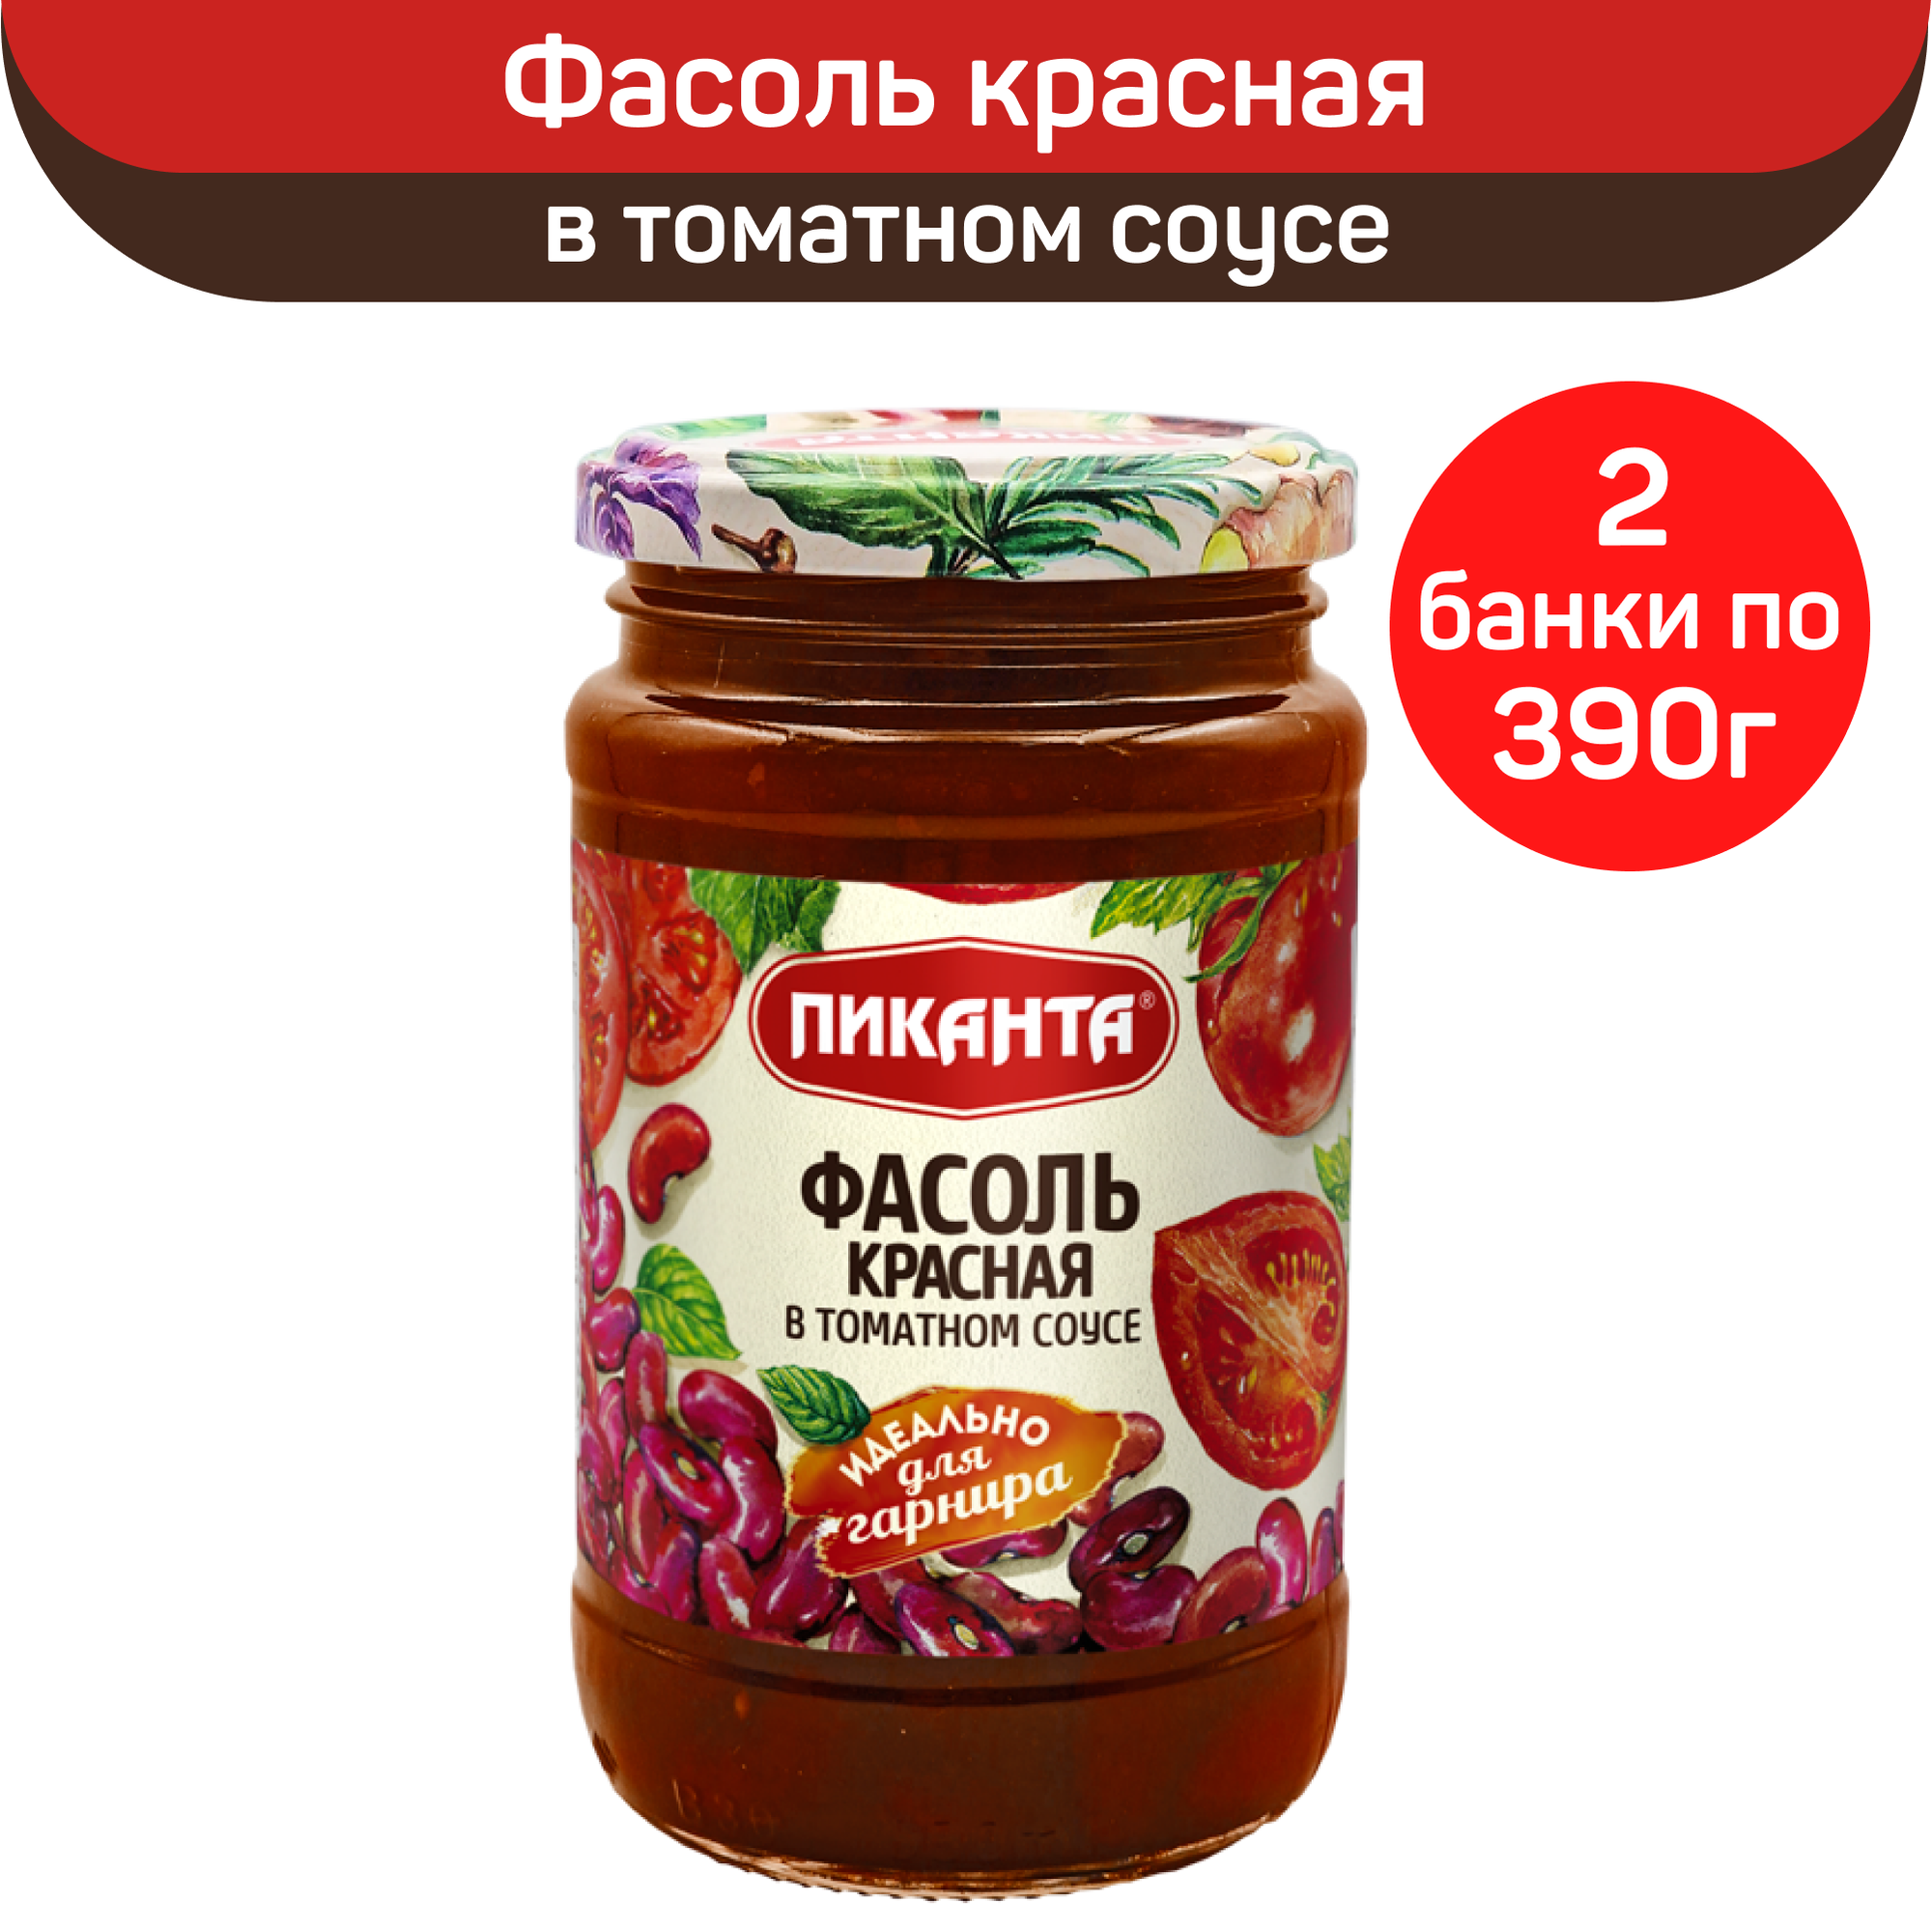 Фасоль Пиканта красная в томатном соусе, 2 шт по 390 г